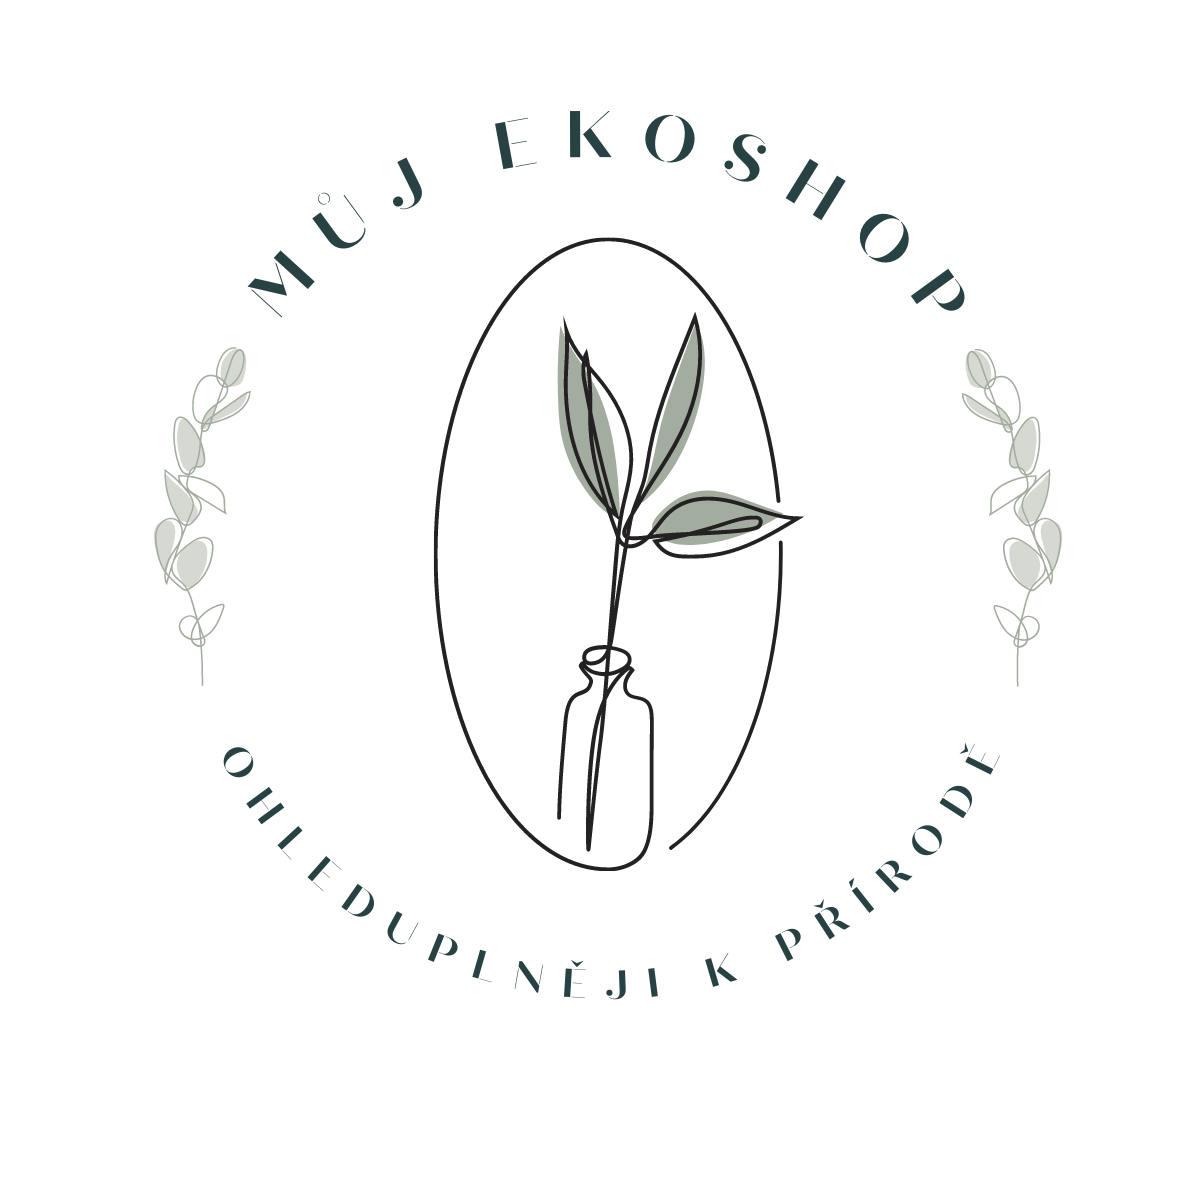 Mujekoshop_logo